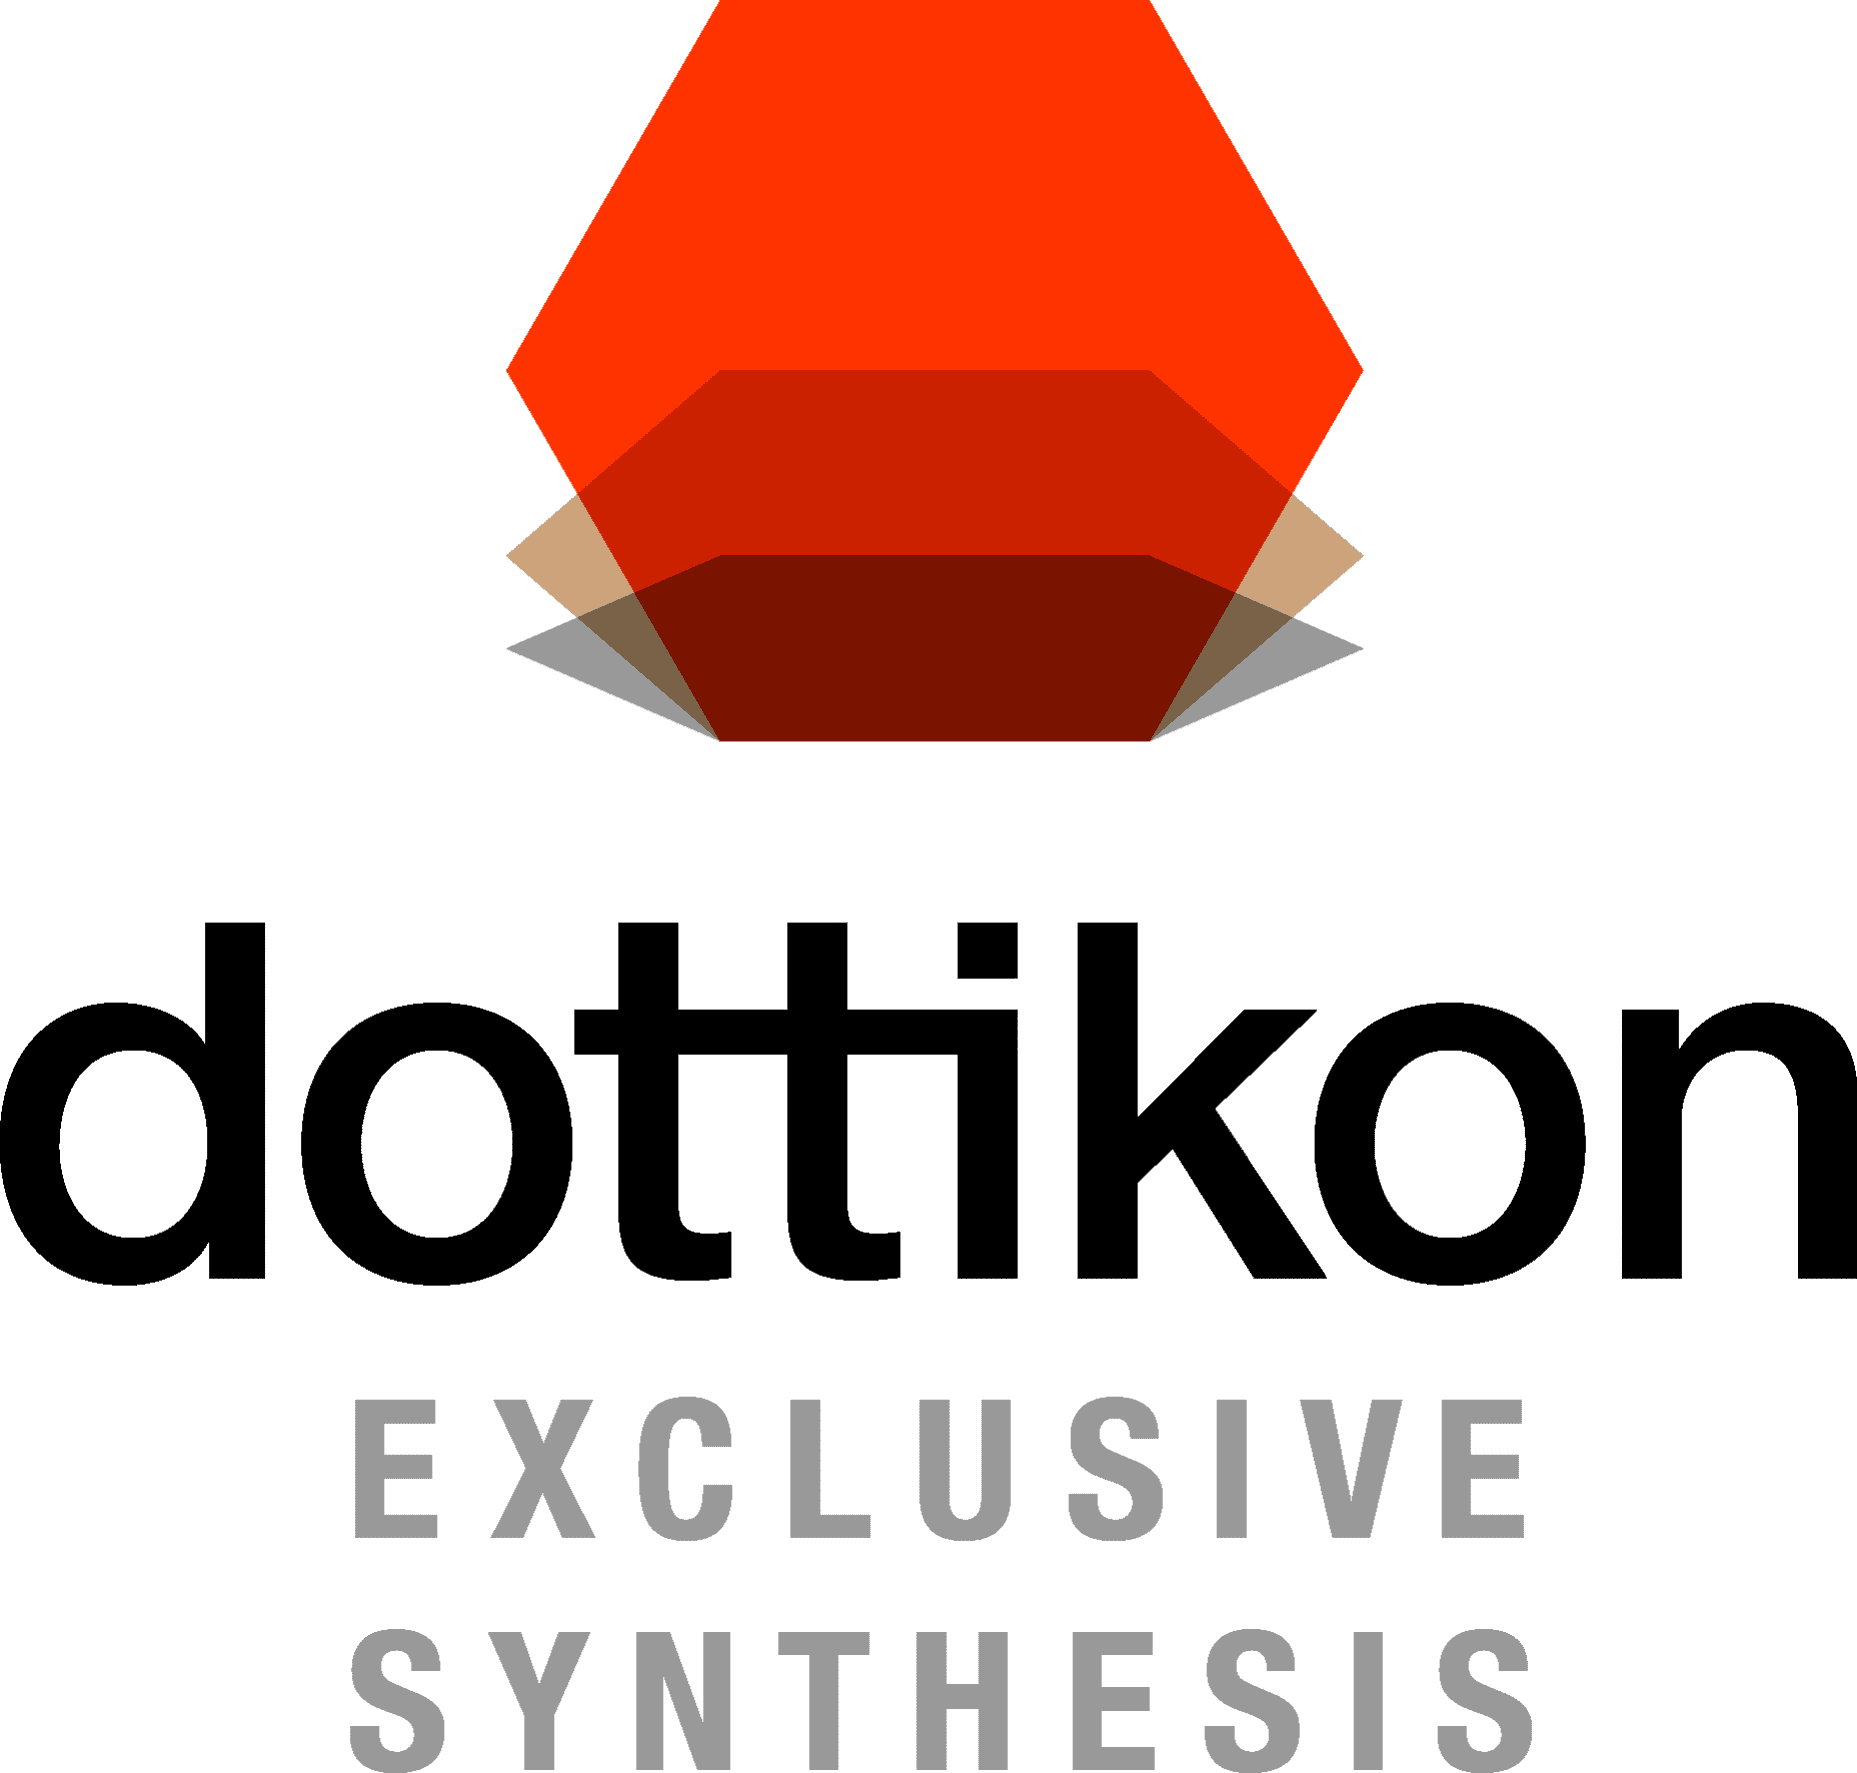 Dottikon Exclusive Synthesis AG